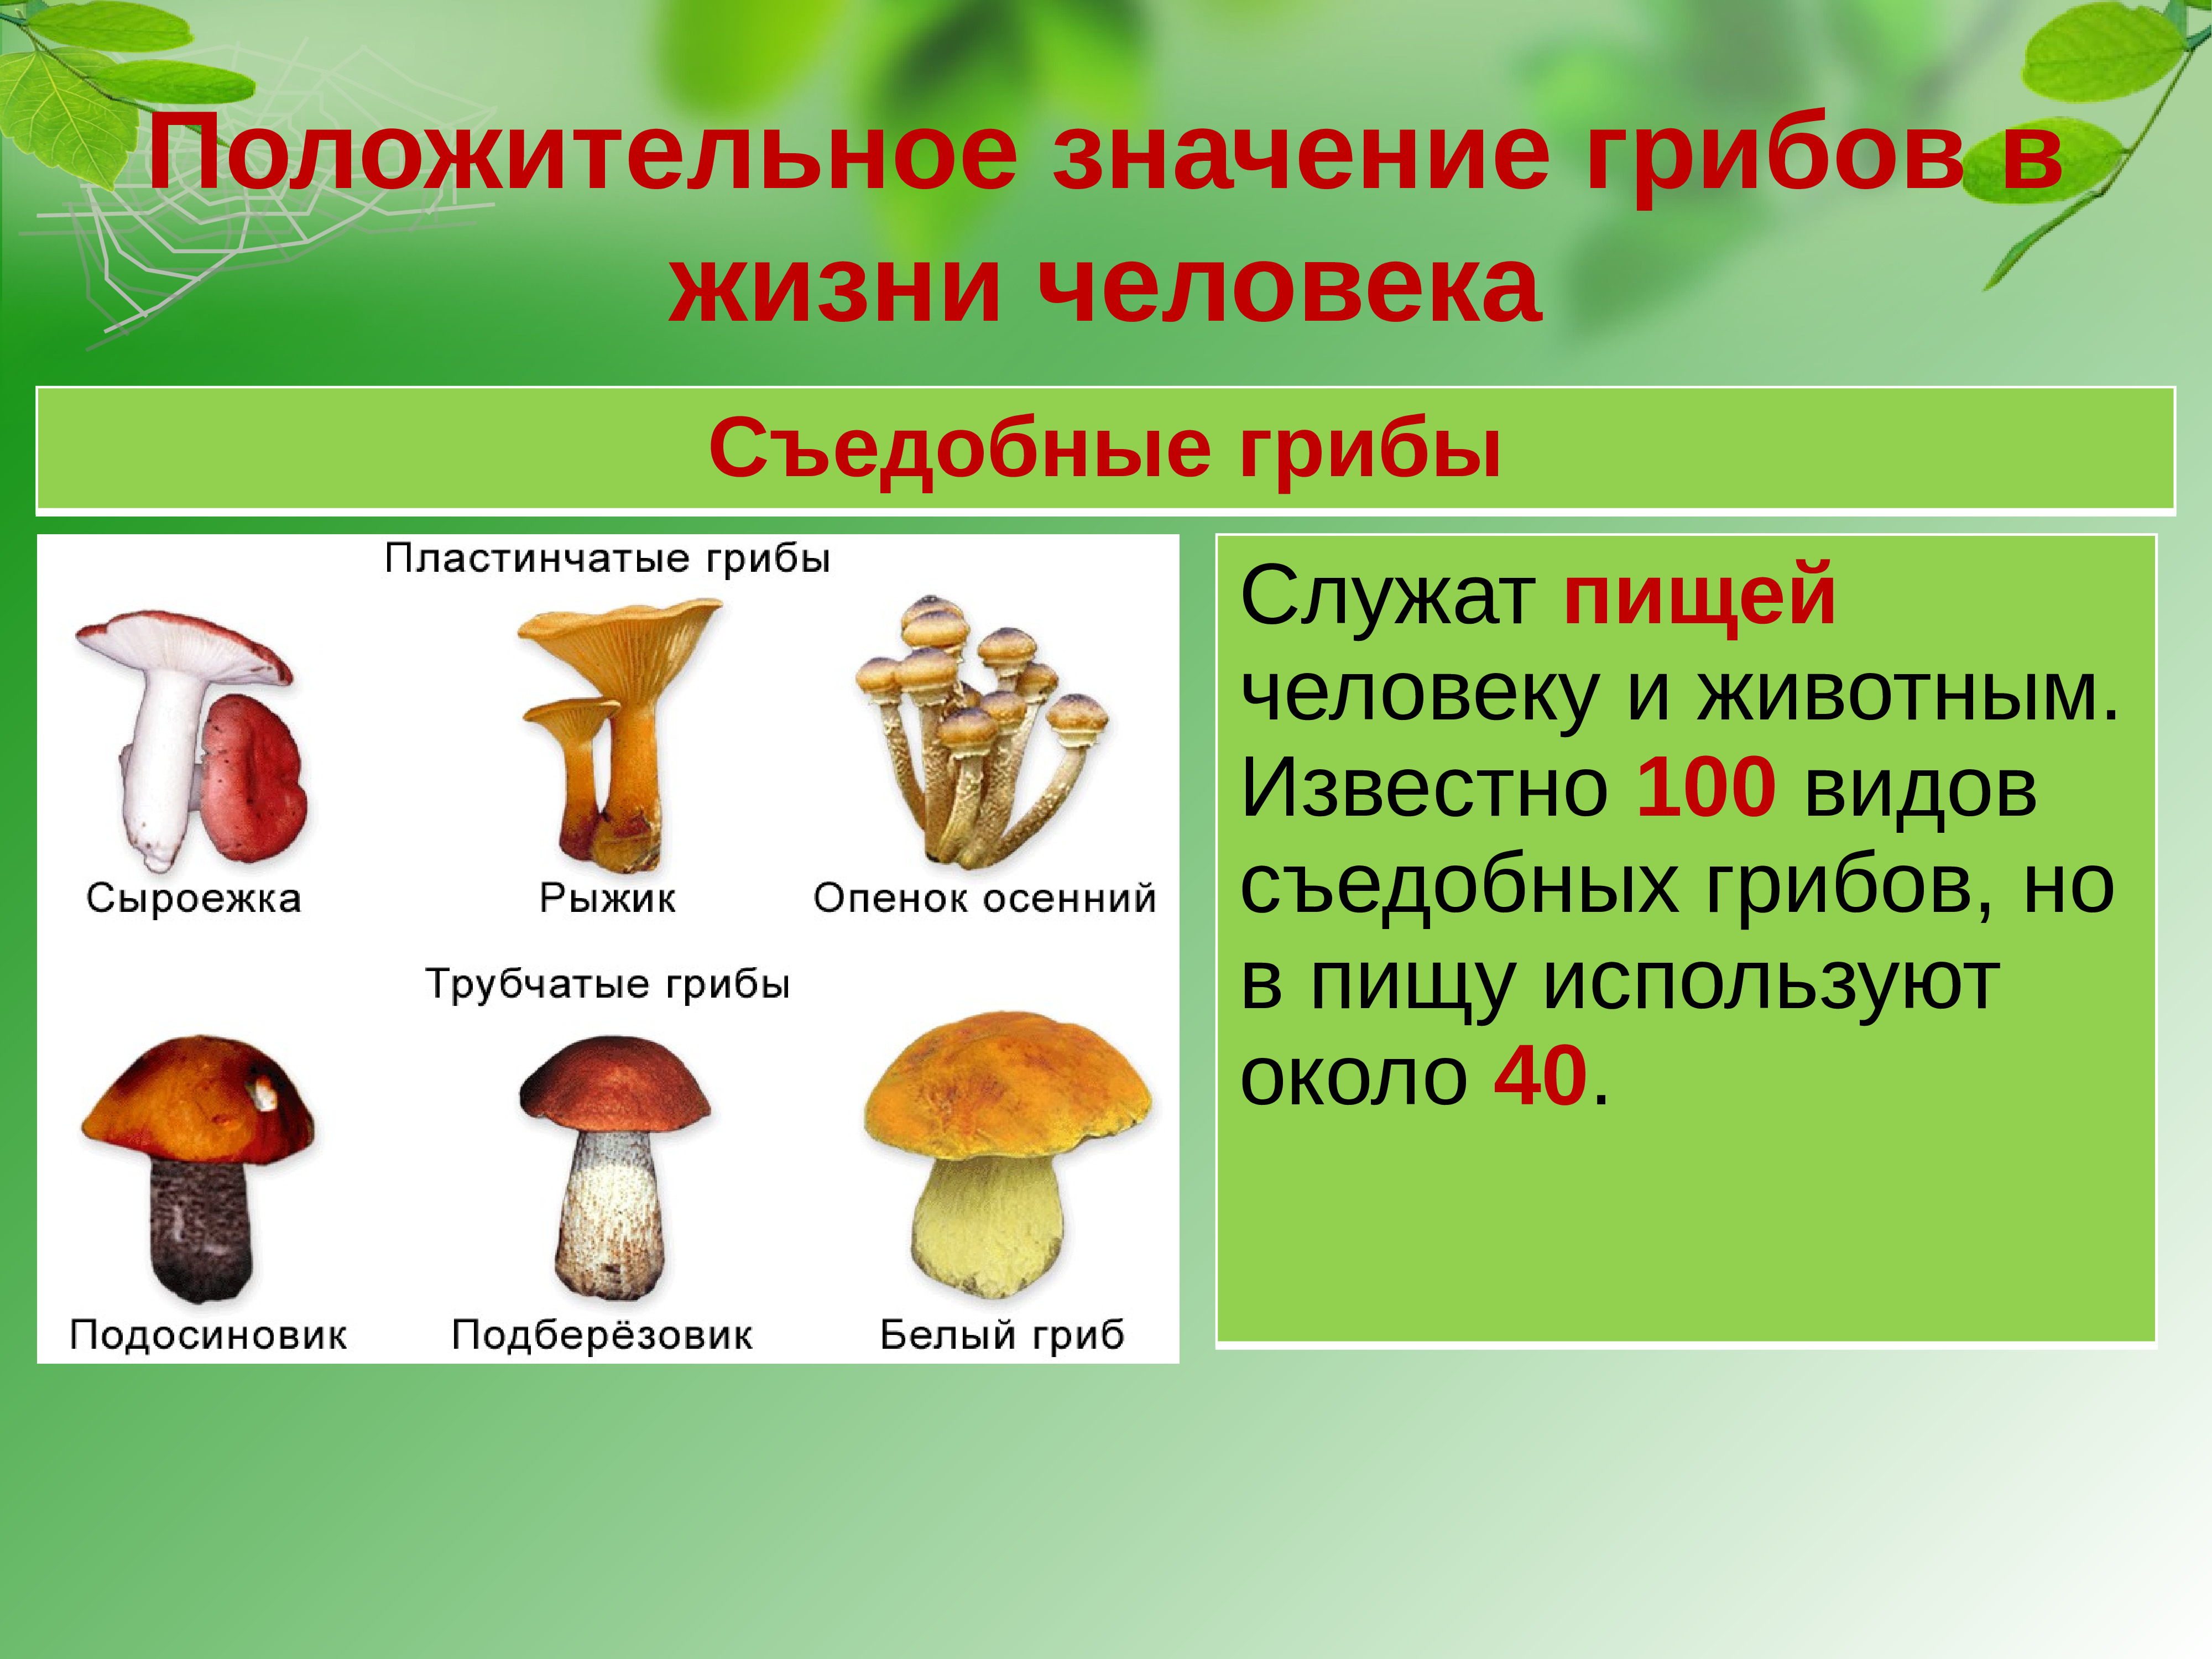 Съедобные грибы в жизни человека.